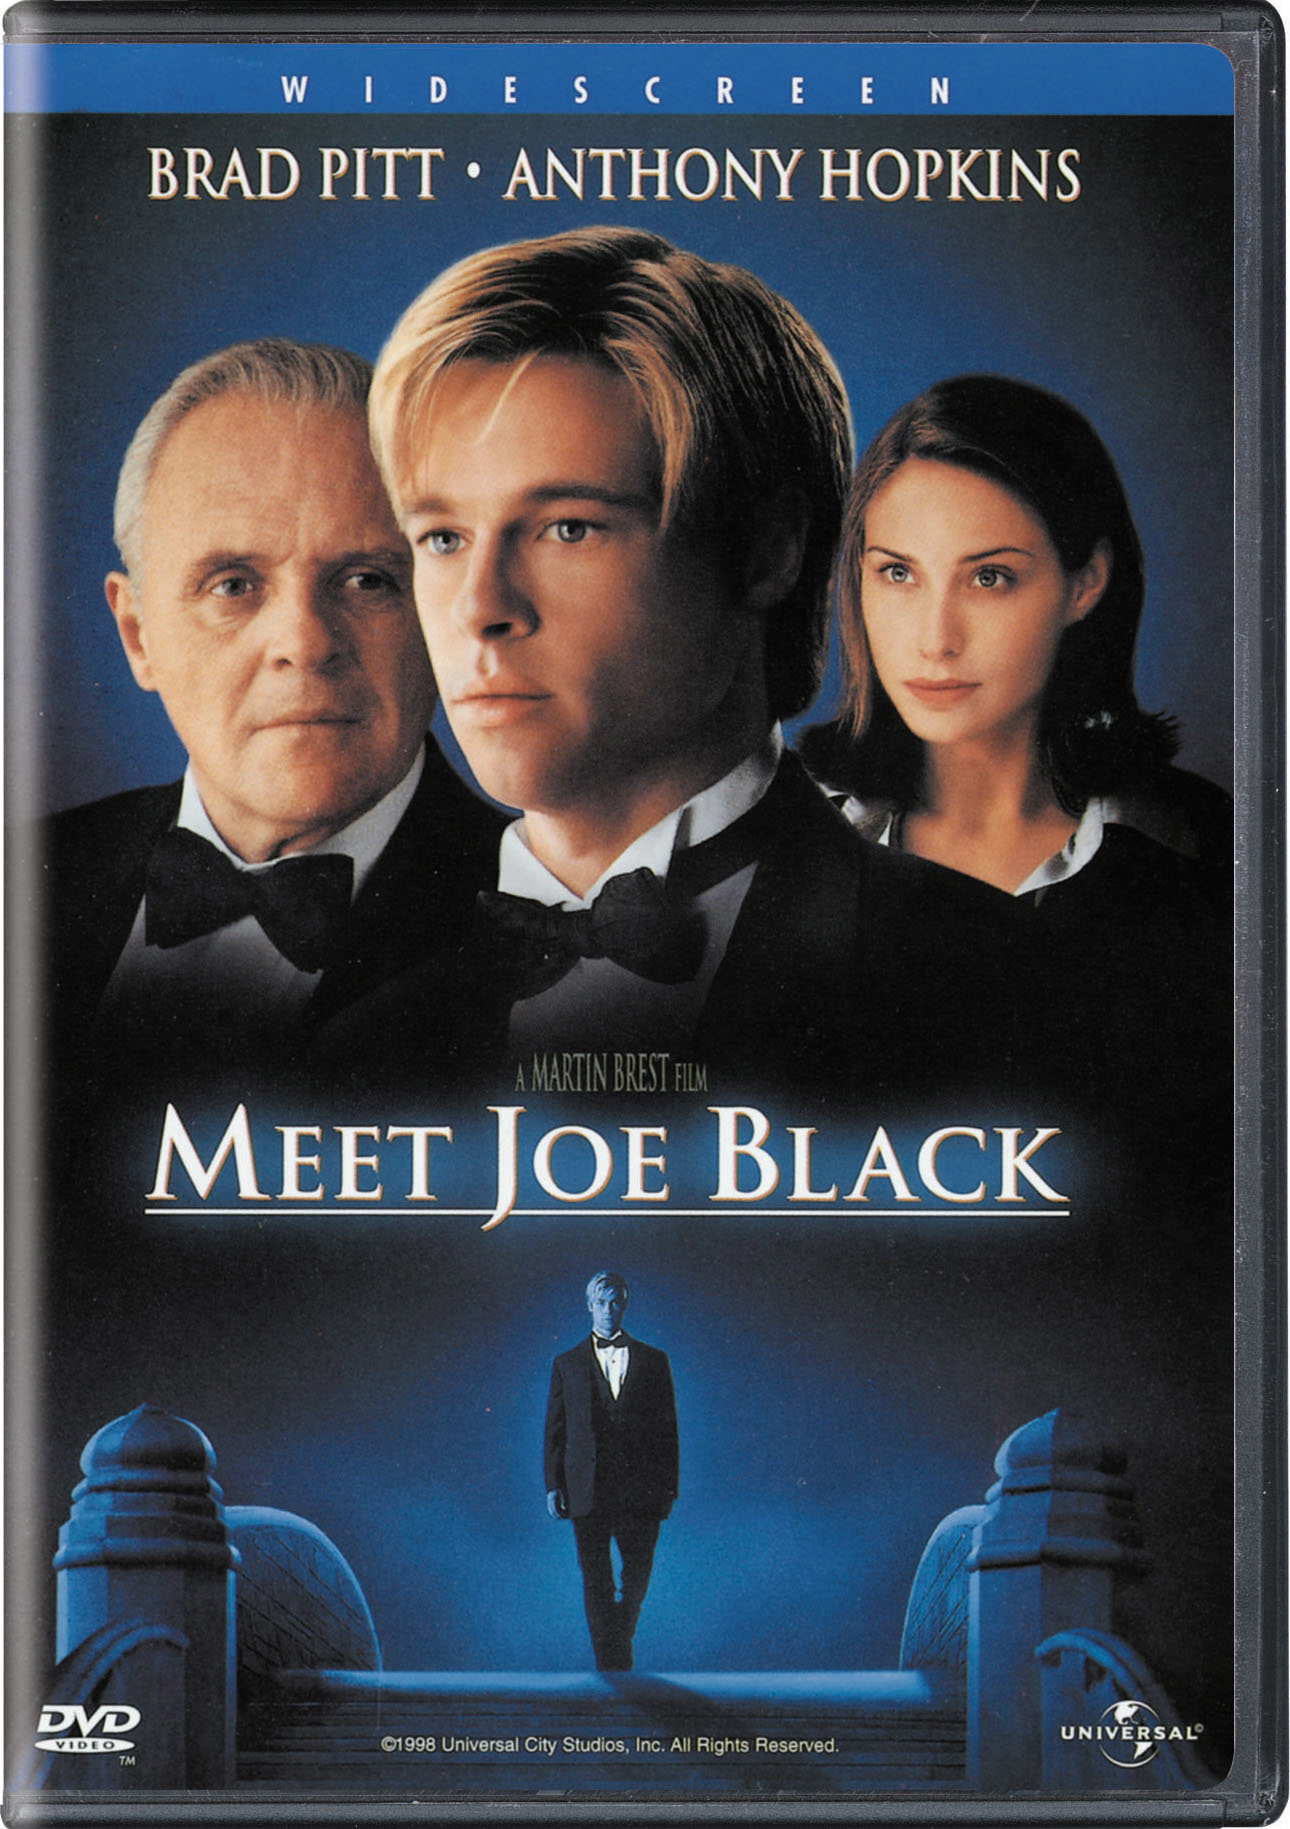 Meet Joe Black - DVD [ 1998 ]  - Drama Movies On DVD - Movies On GRUV